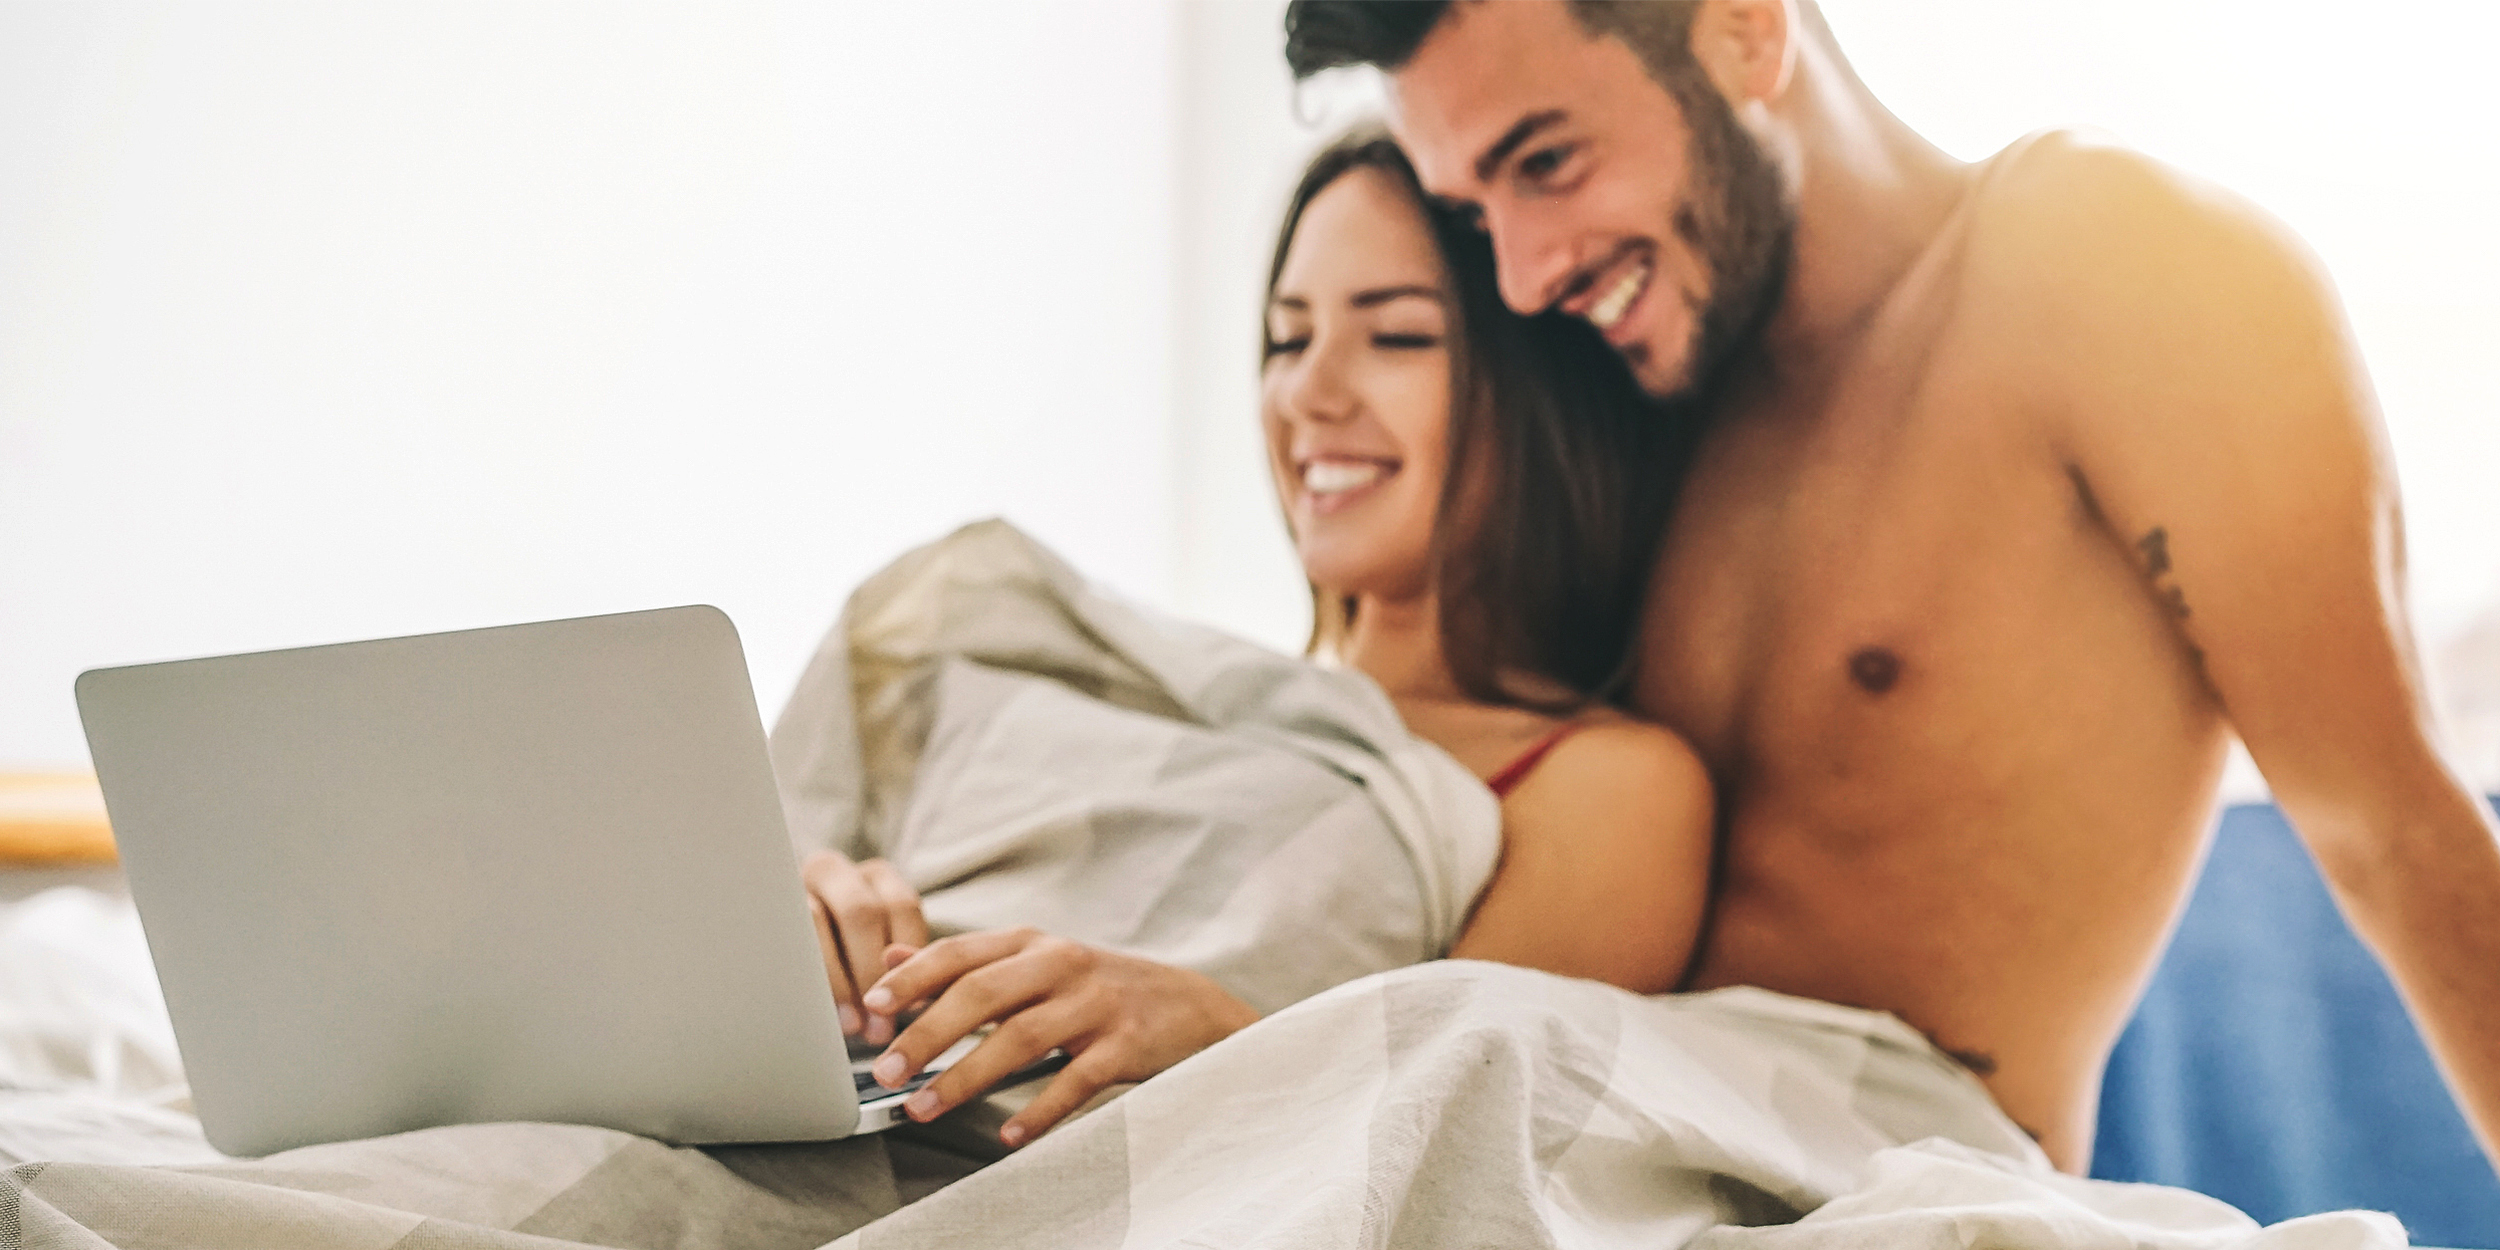 Jasper reccomend Mature couples sex blogs